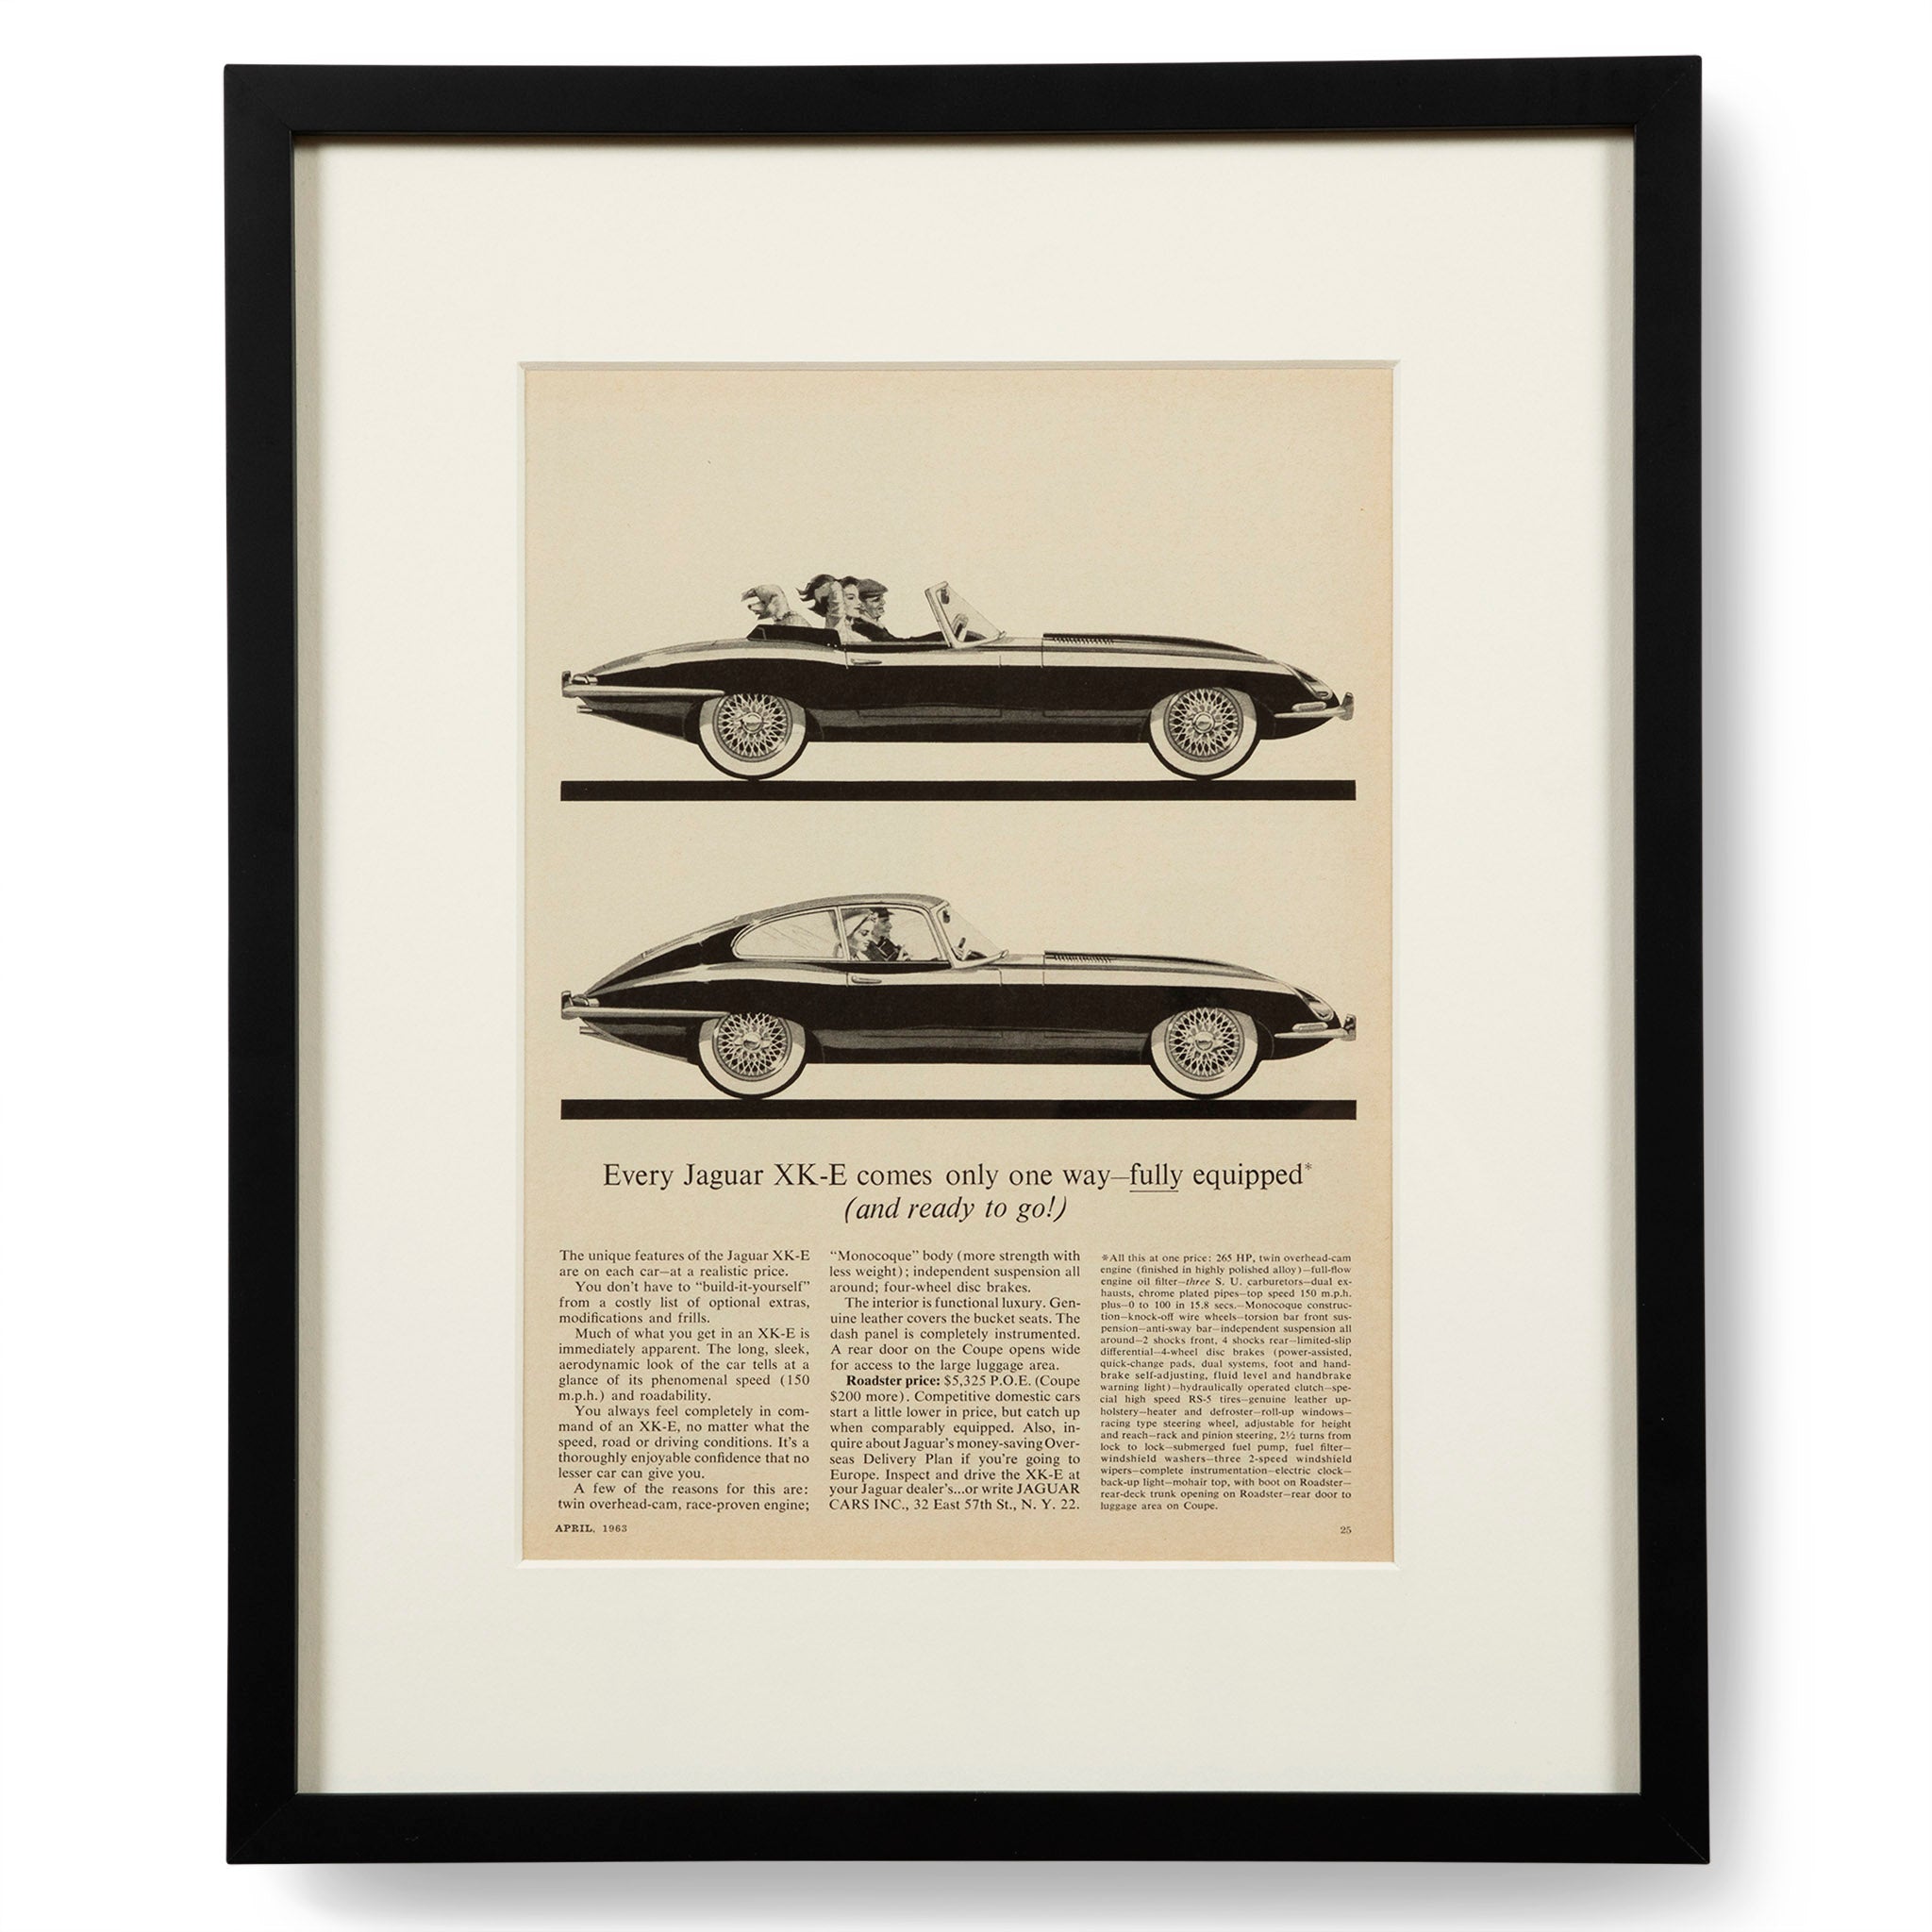 Vintage Jaguar Motors XK-E Advertisement